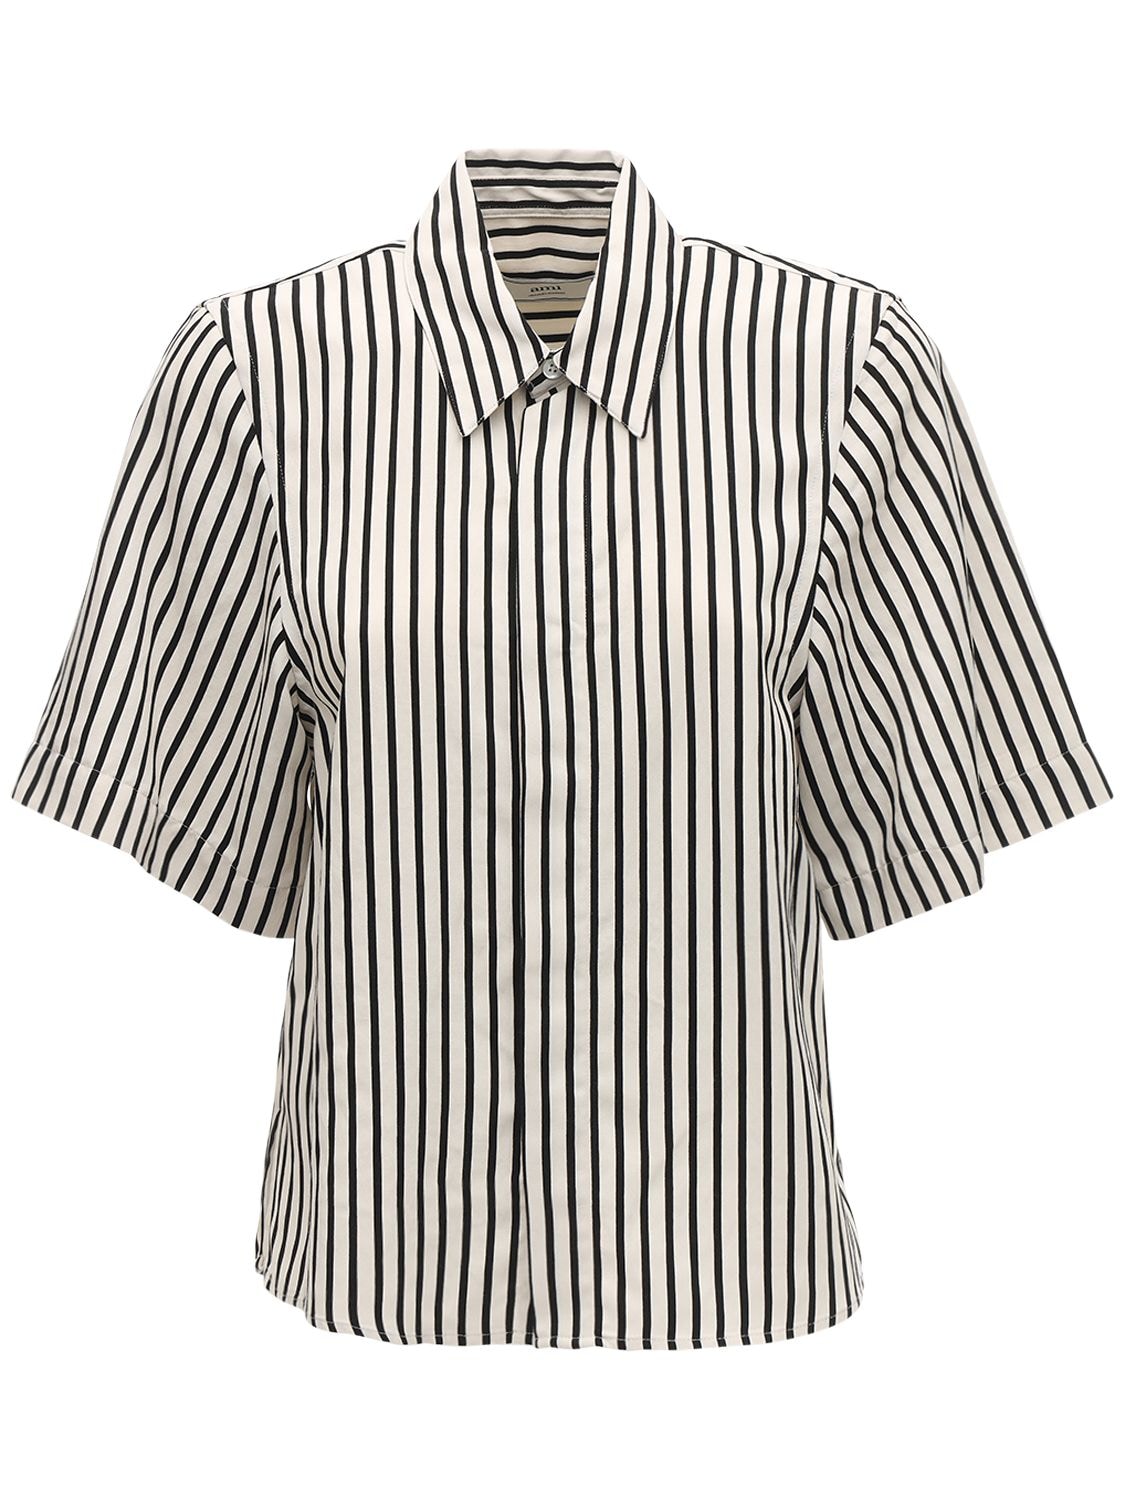 AMI ALEXANDRE MATTIUSSI 条纹粘胶纤维短袖衬衫,71IXJQ001-MTUX0